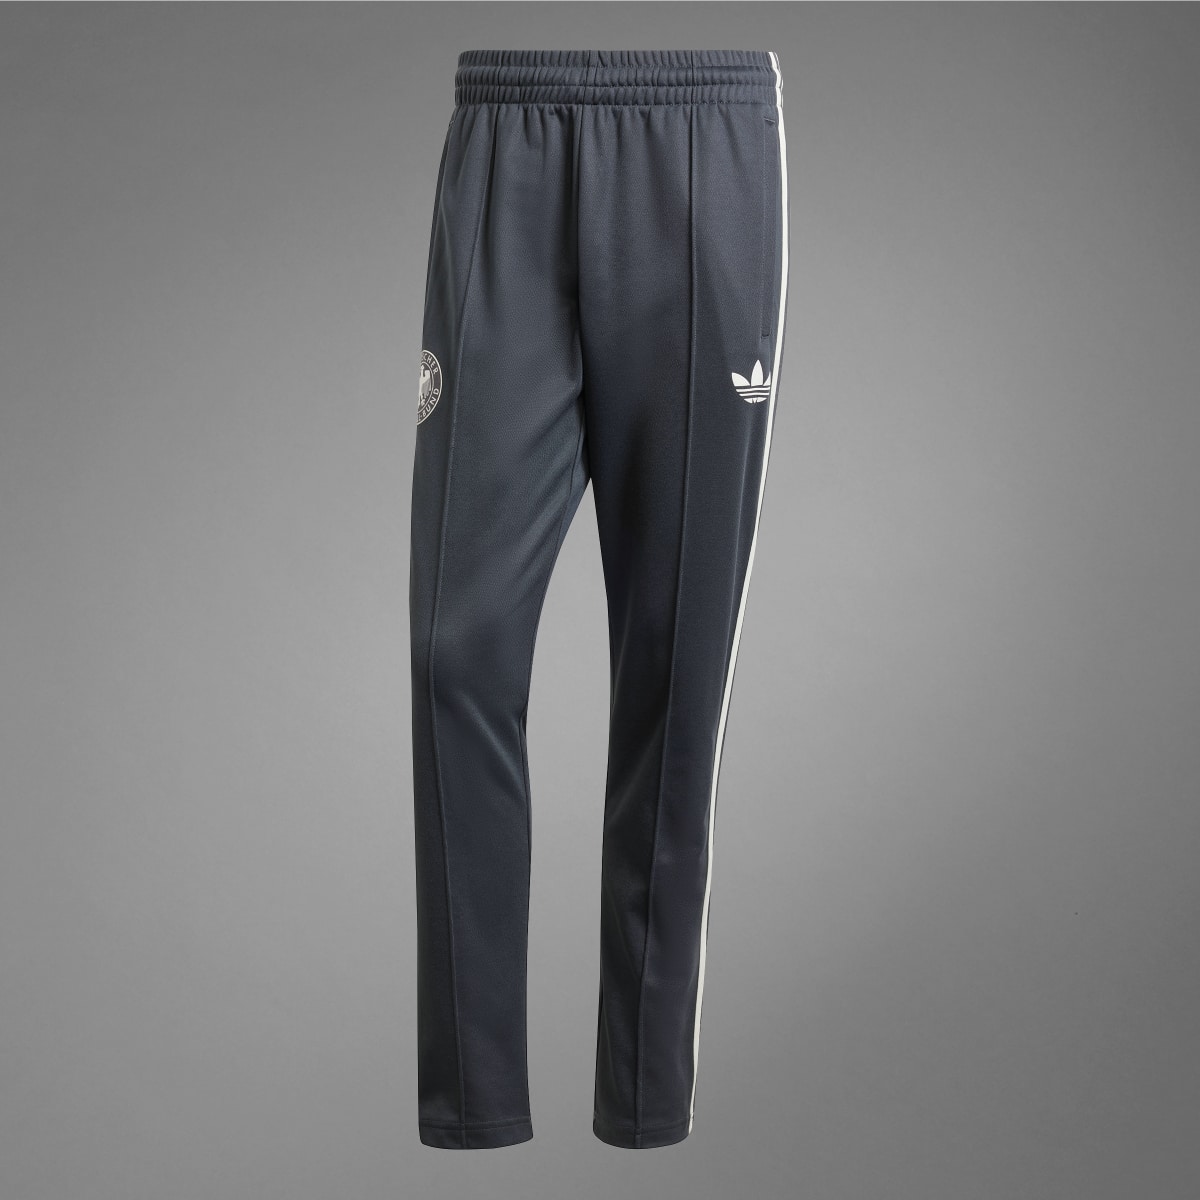 Adidas Pantalon de survêtement Allemagne Beckenbauer. 9